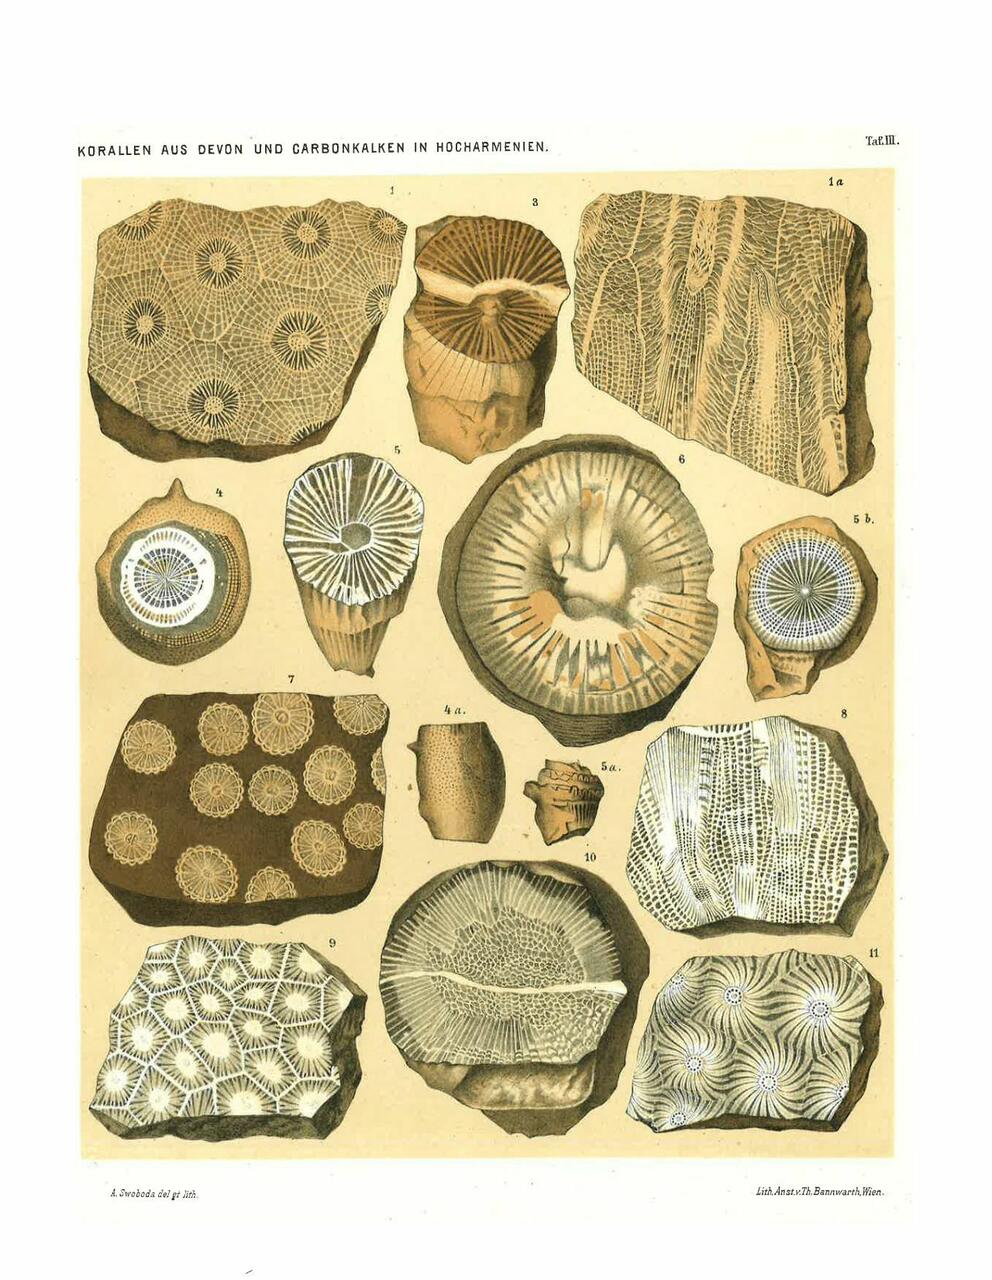 Erinevad korallid Abichi 1887. a avaldatud uurimusest „Geologische forschungen in den Kaukasischen Ländern“